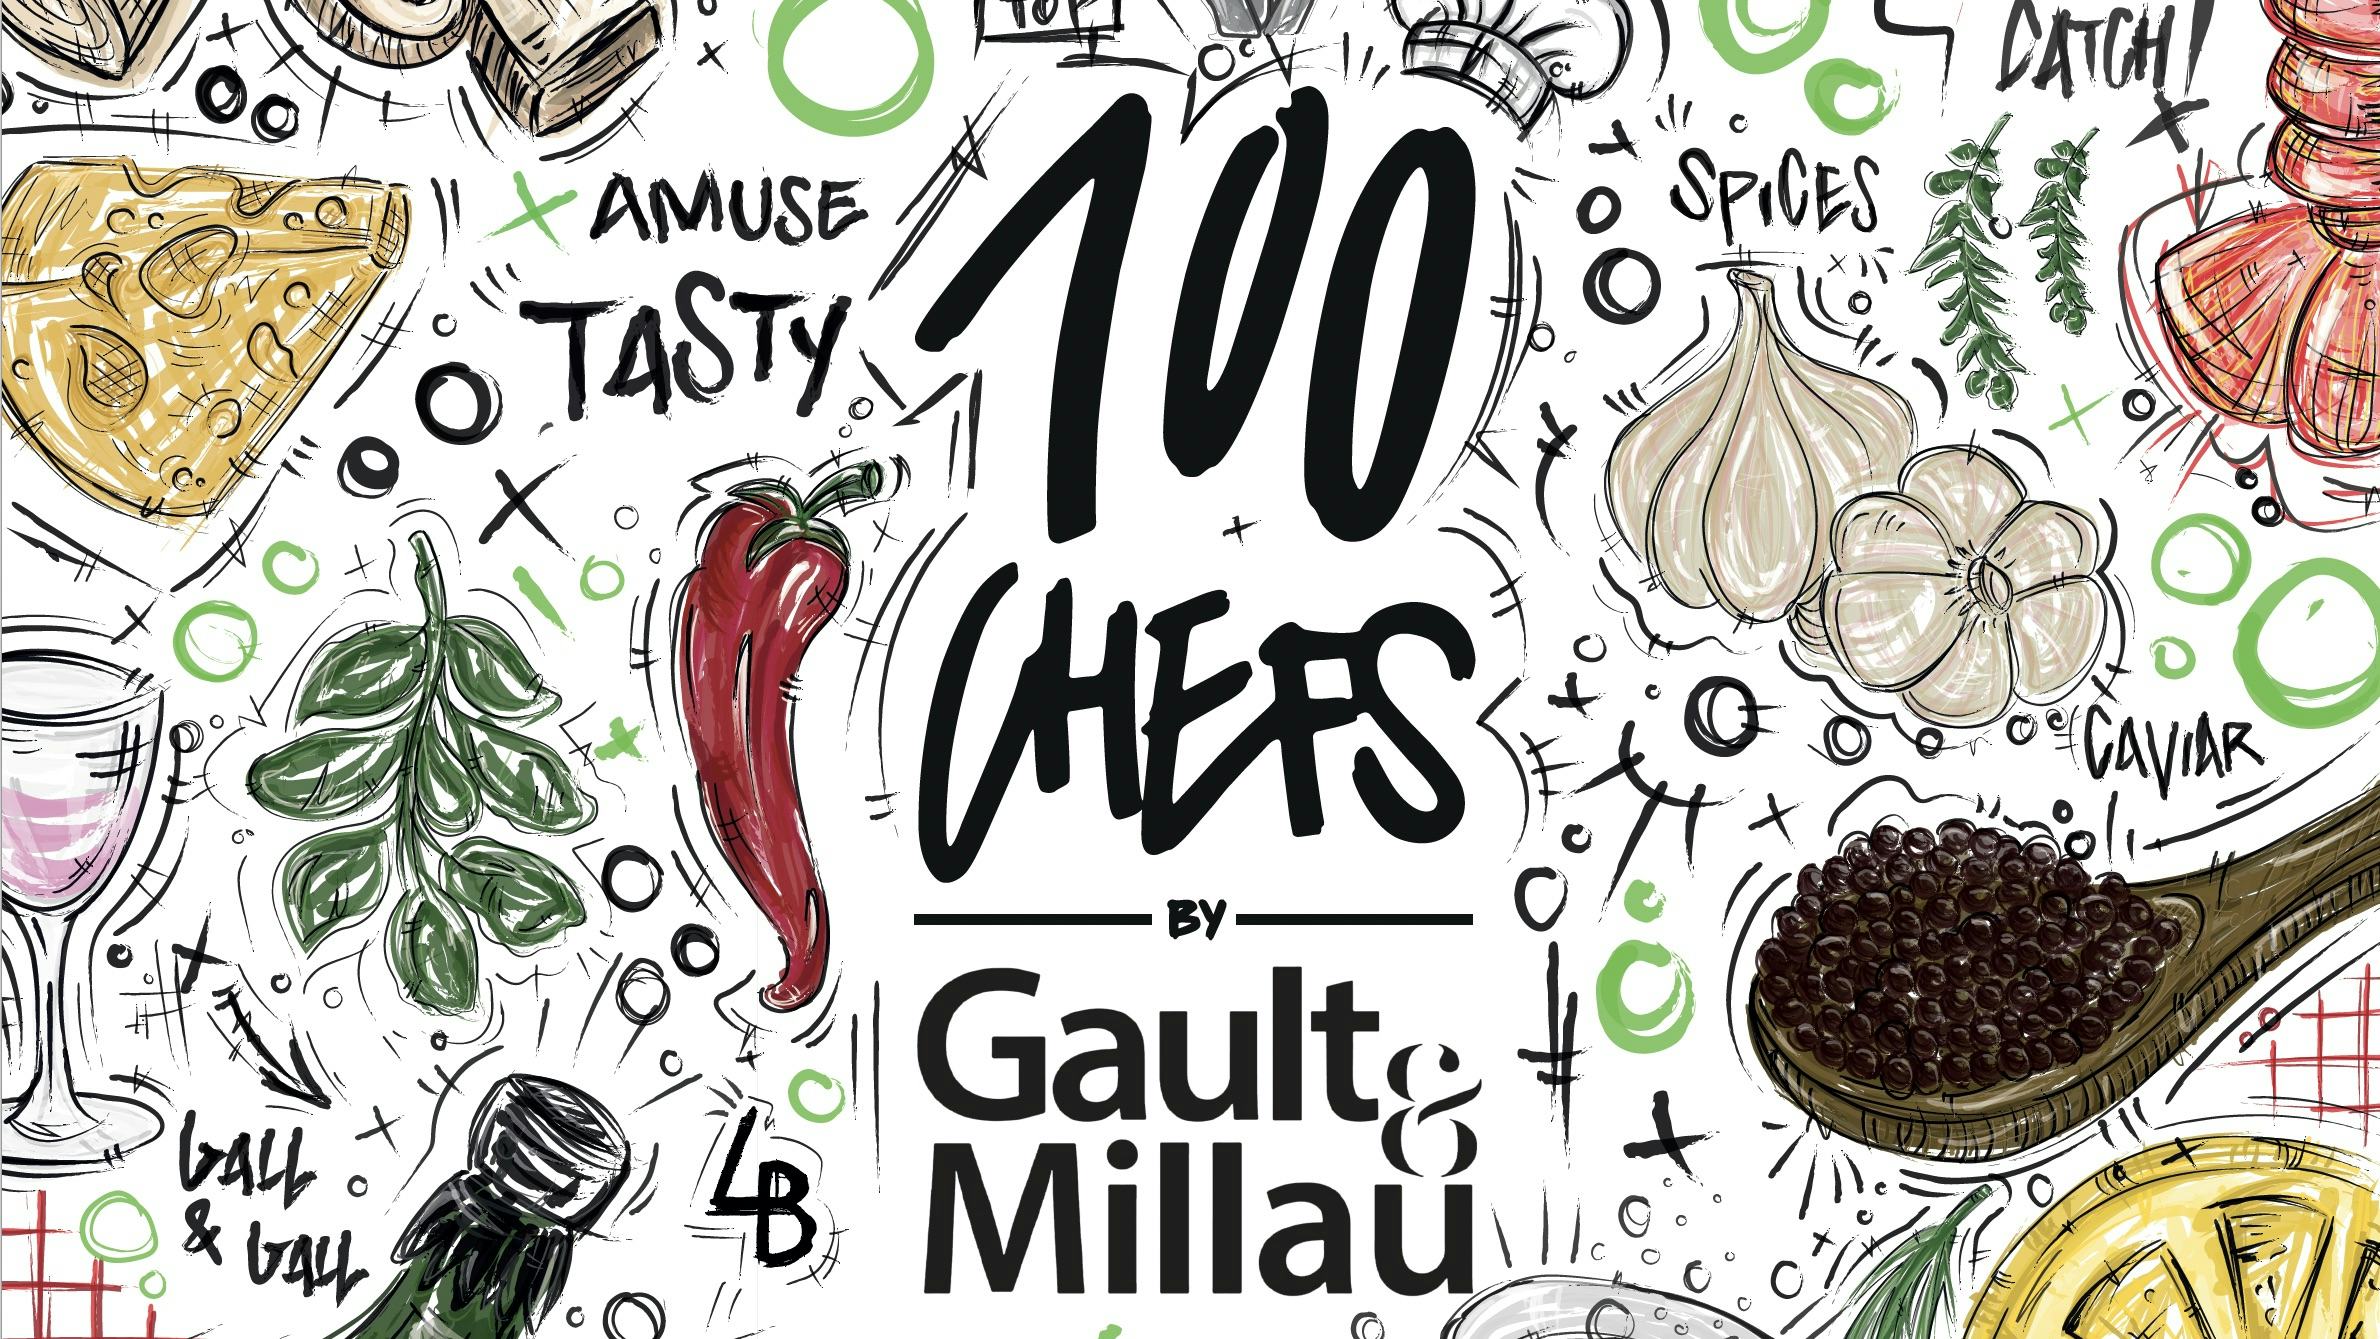 Nieuw en groots event van Gault&Millau met honderd chefs